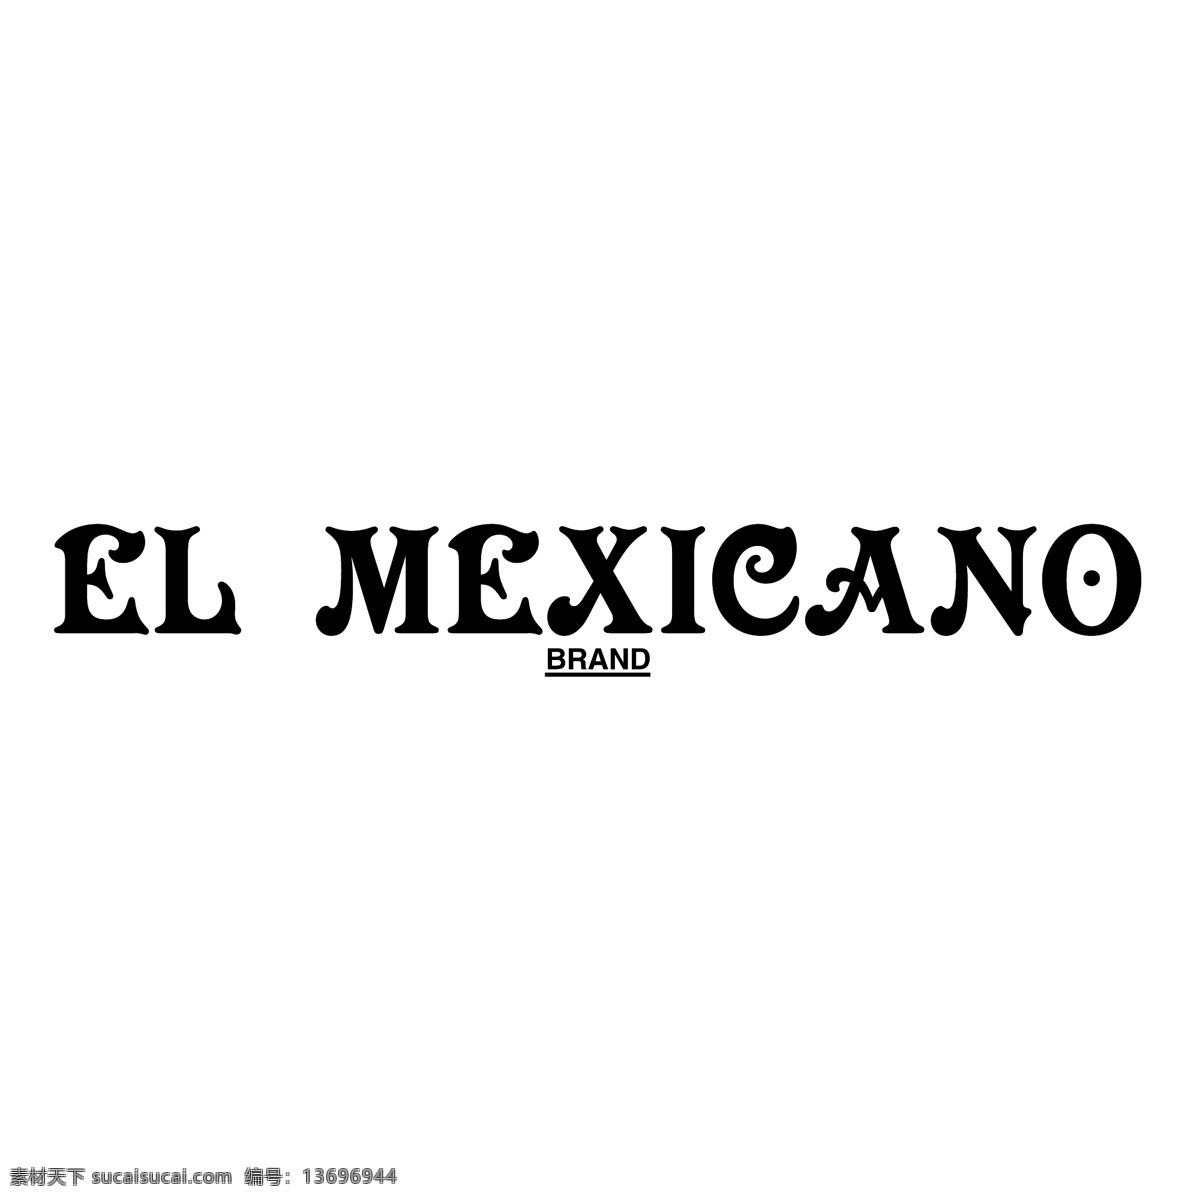 墨西哥人 矢量 埃尔 mexicano 标志 el el墨西哥人 蓝色